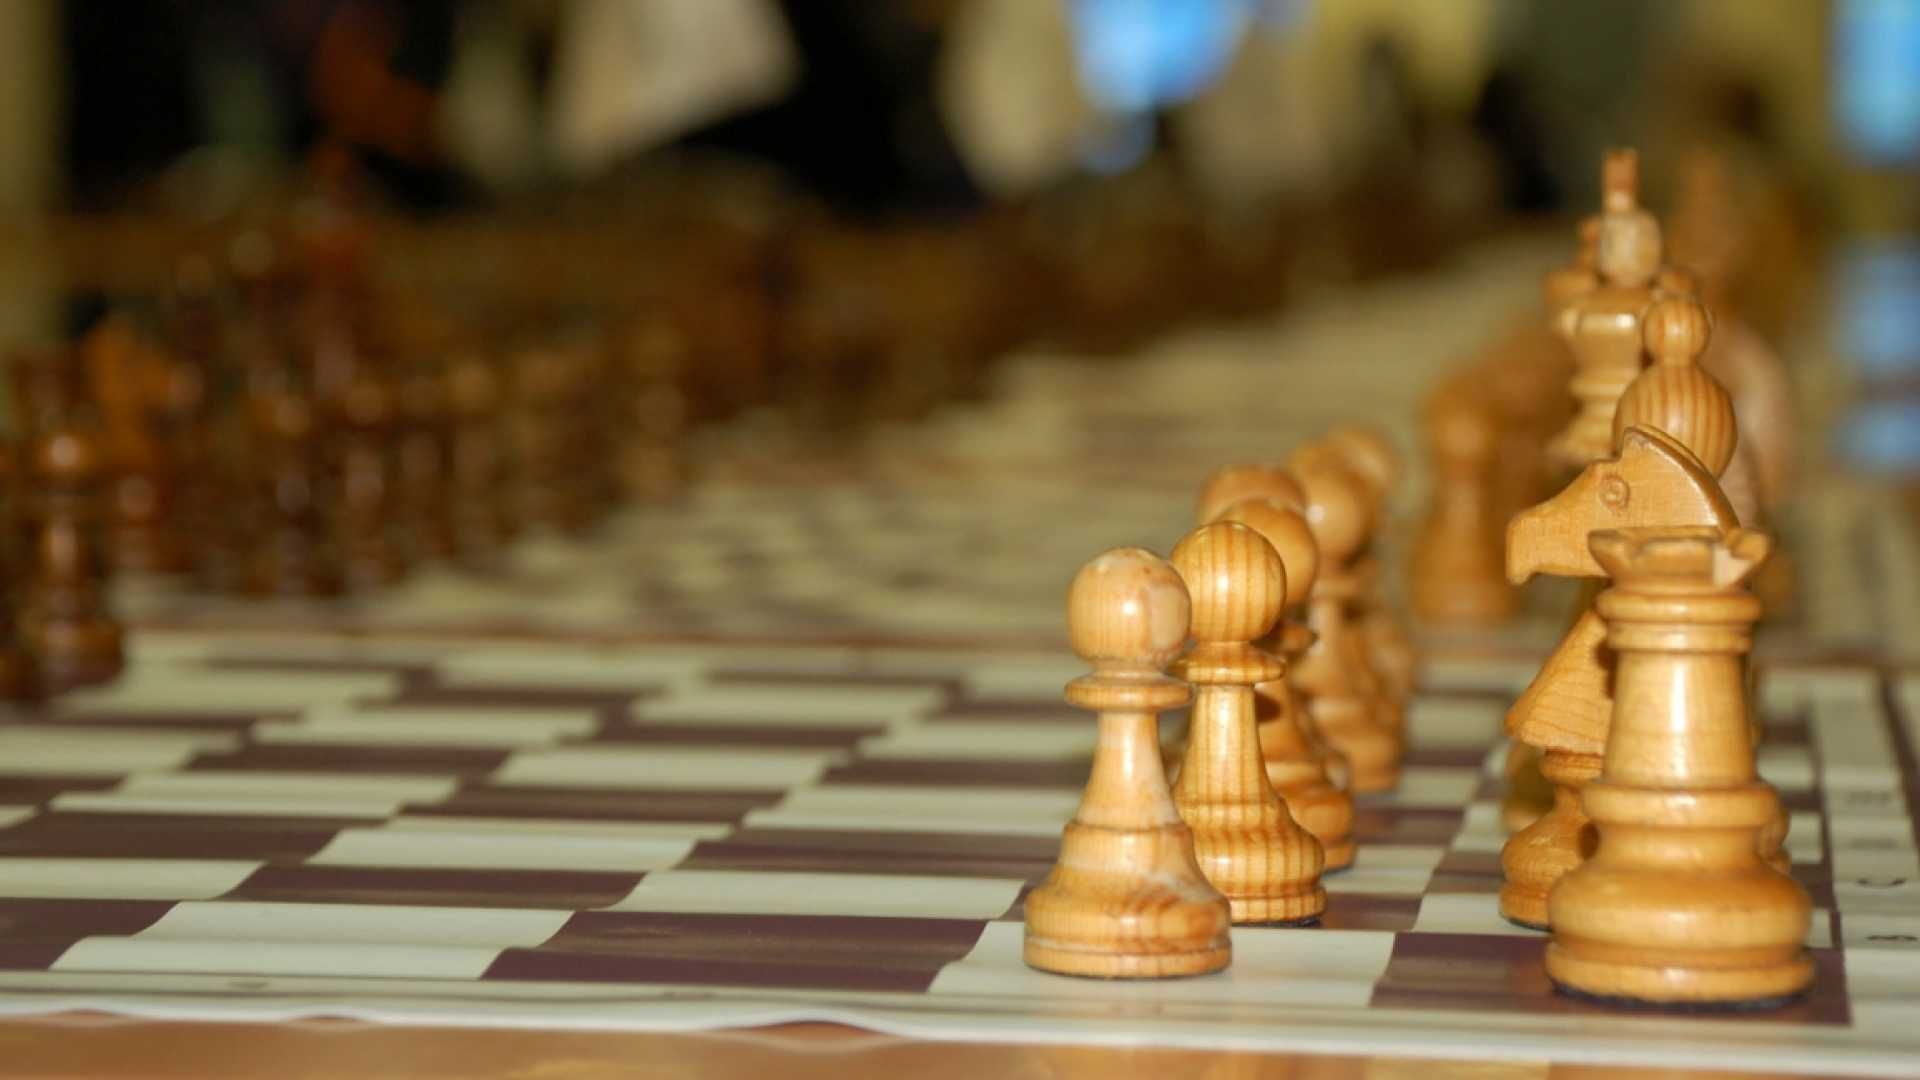 4 августа в д.Мингерь пройдет открытый турнир Сабинского муниципального района по интеллектуальному двоеборью (шашки, шахматы) посвященному памяти М.М. Миннахметова [+положение] (16+)